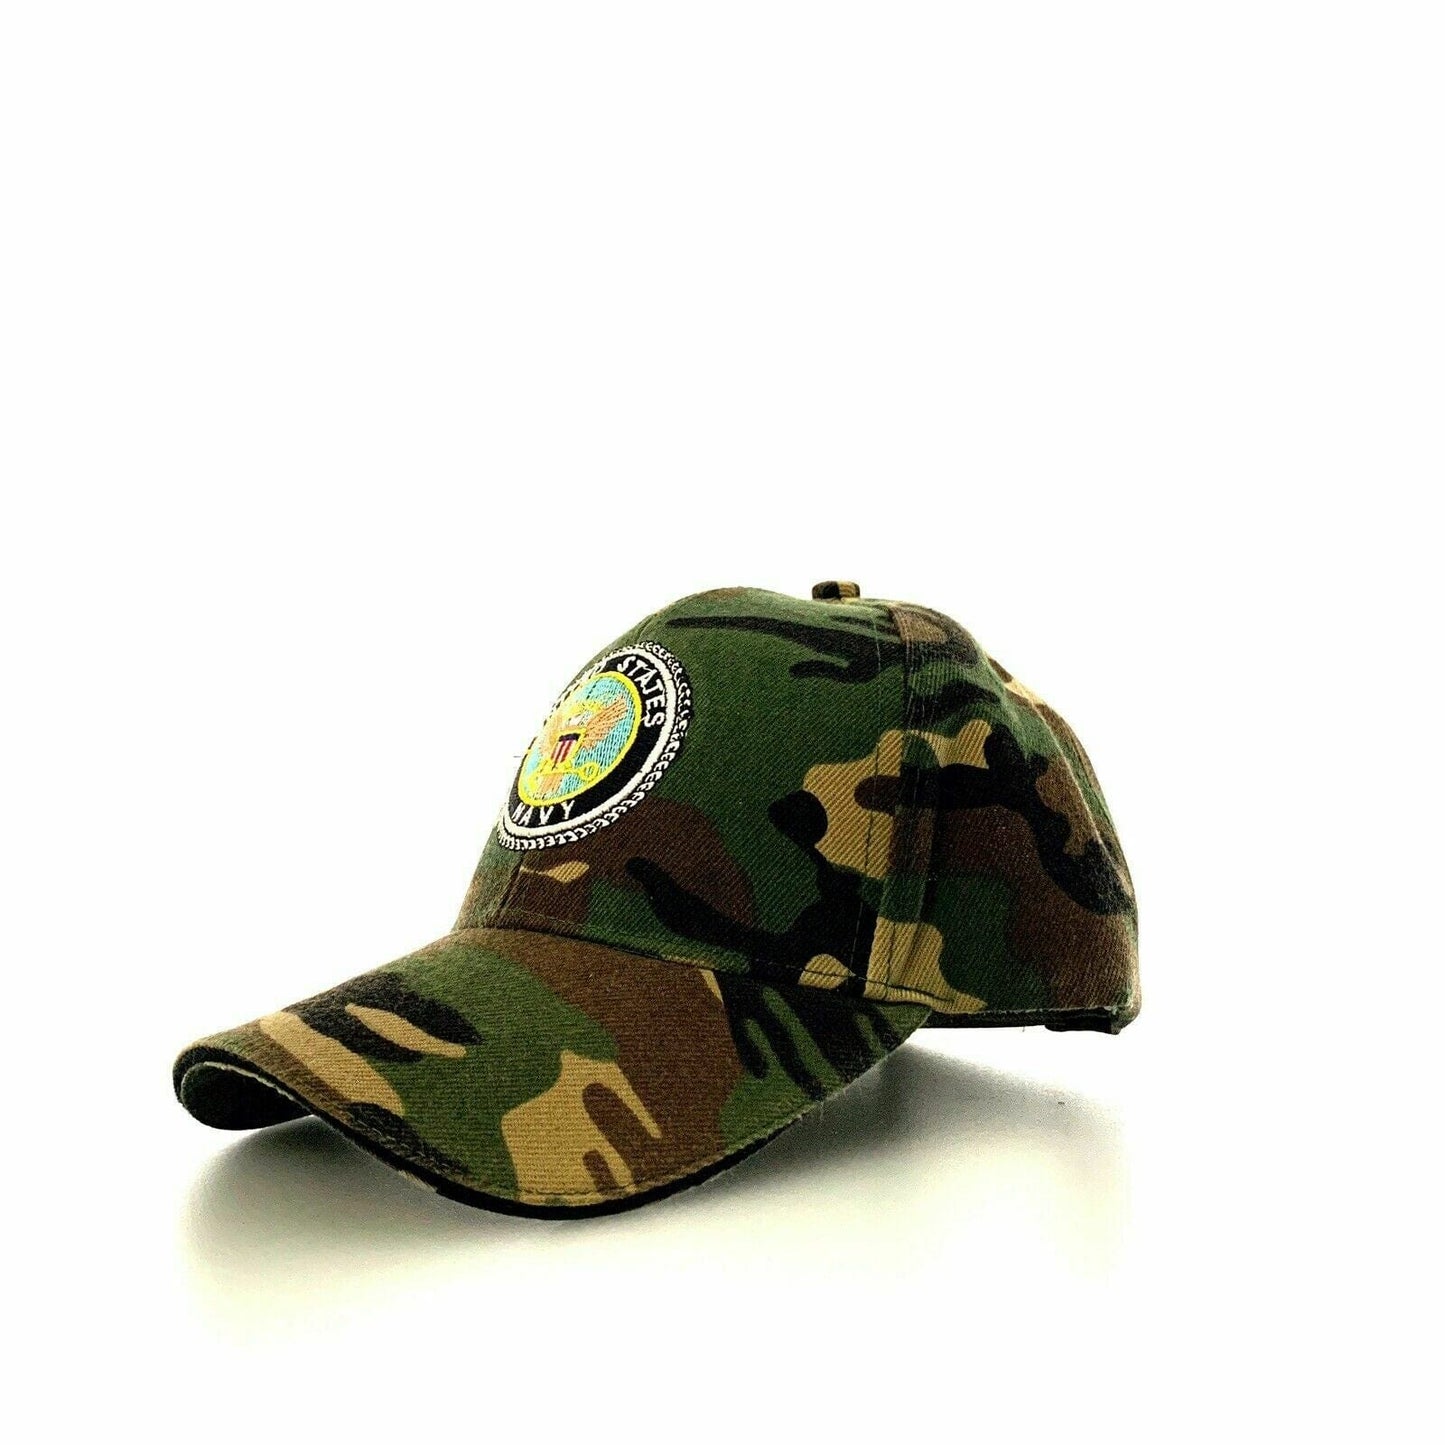 United States Navy Camouflage Adjustable Baseball Hat Cap